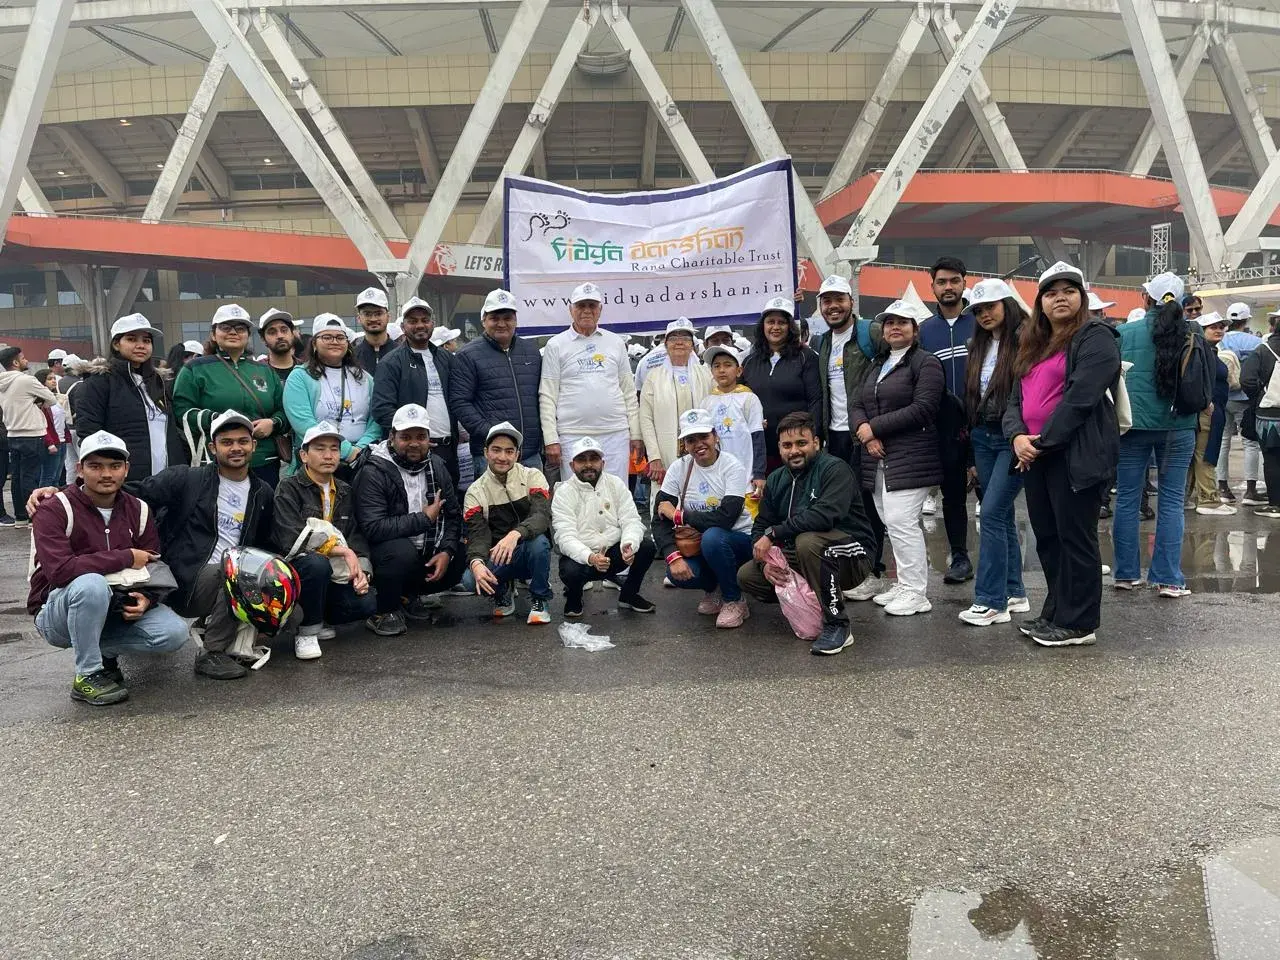 Team SSR take participate in Cancer walk